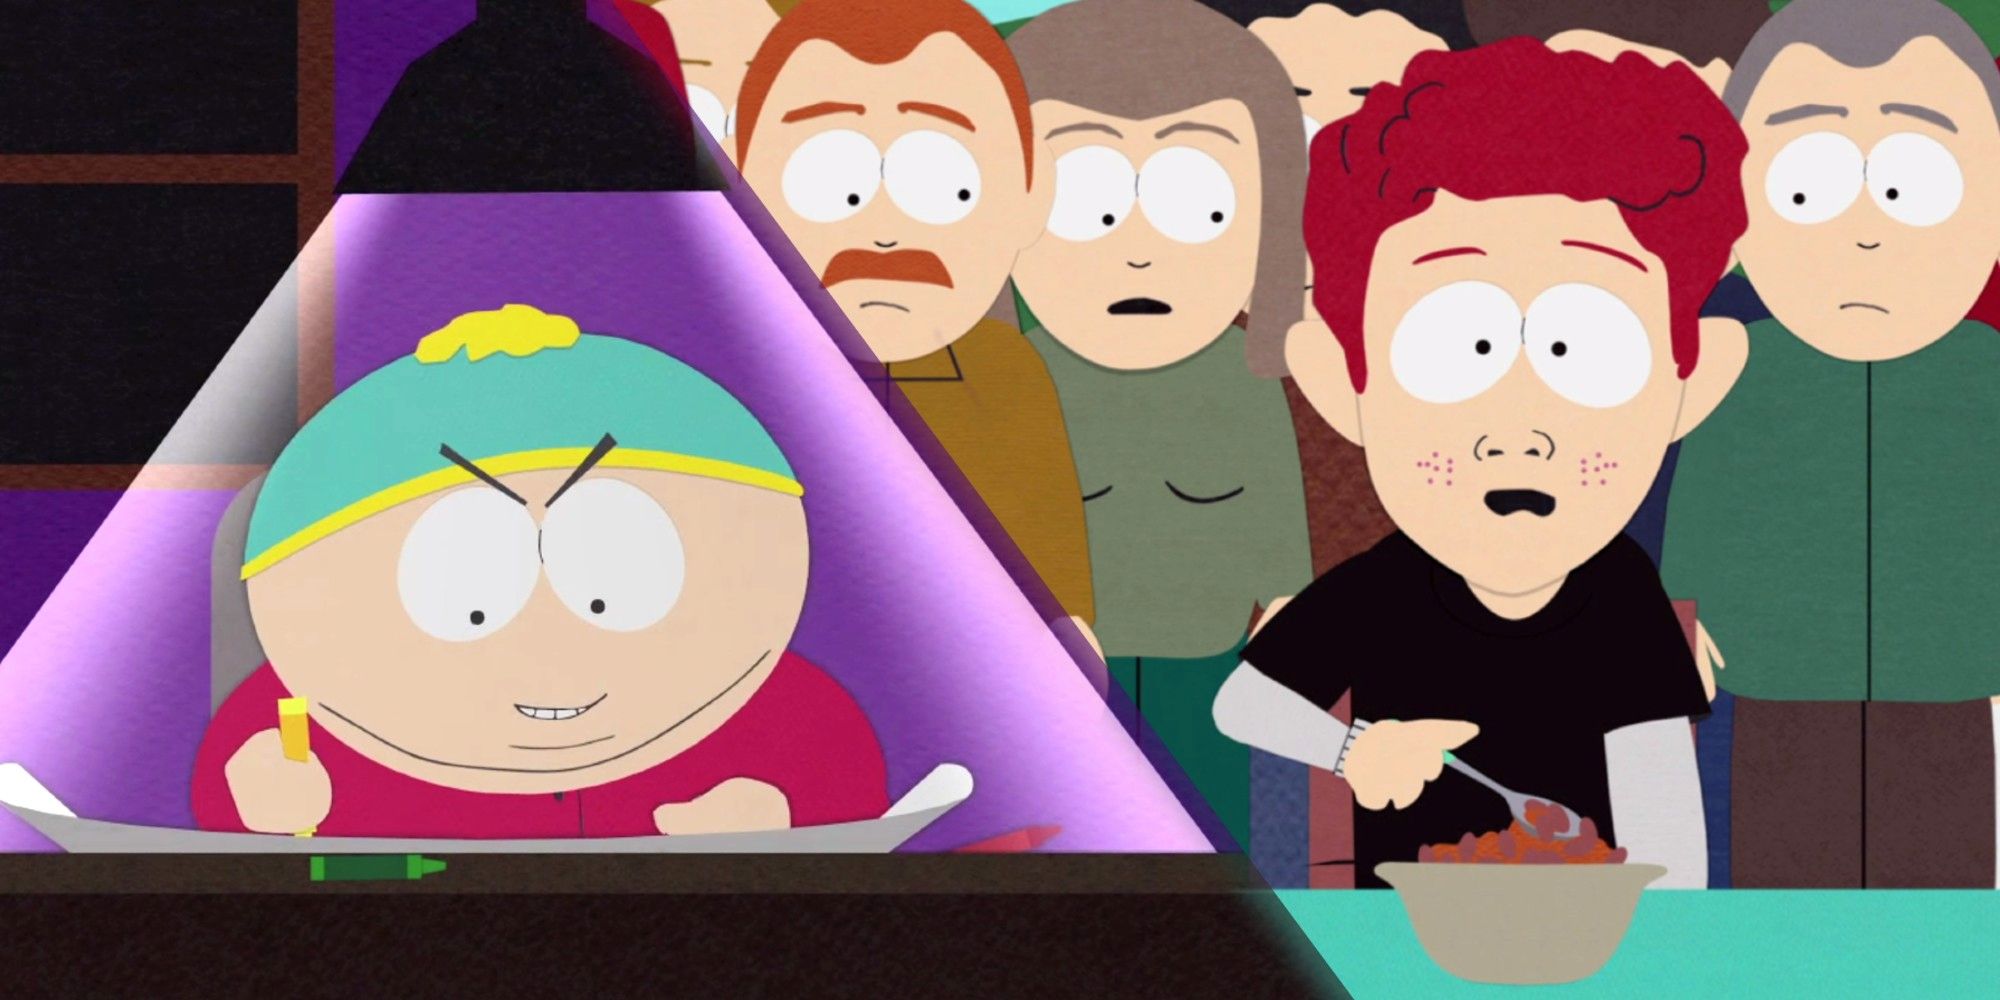 El episodio mejor calificado de South Park lanzado hace más de 20 años